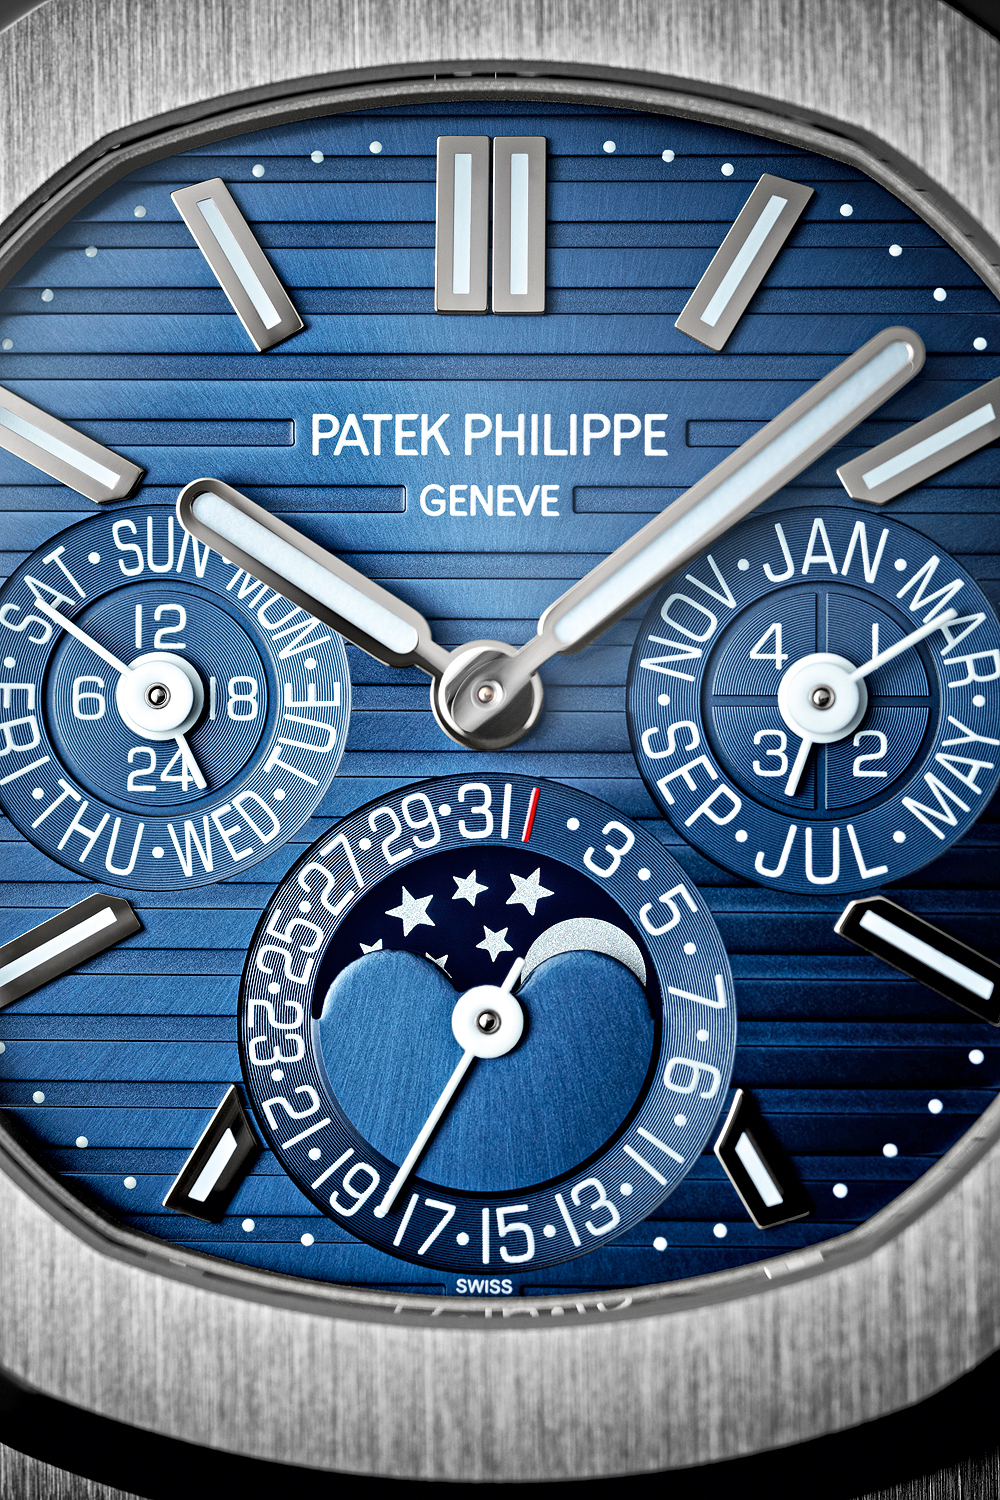 Patek Philippe Nautilus Perpetual Calendar 5740/1g-001 Review